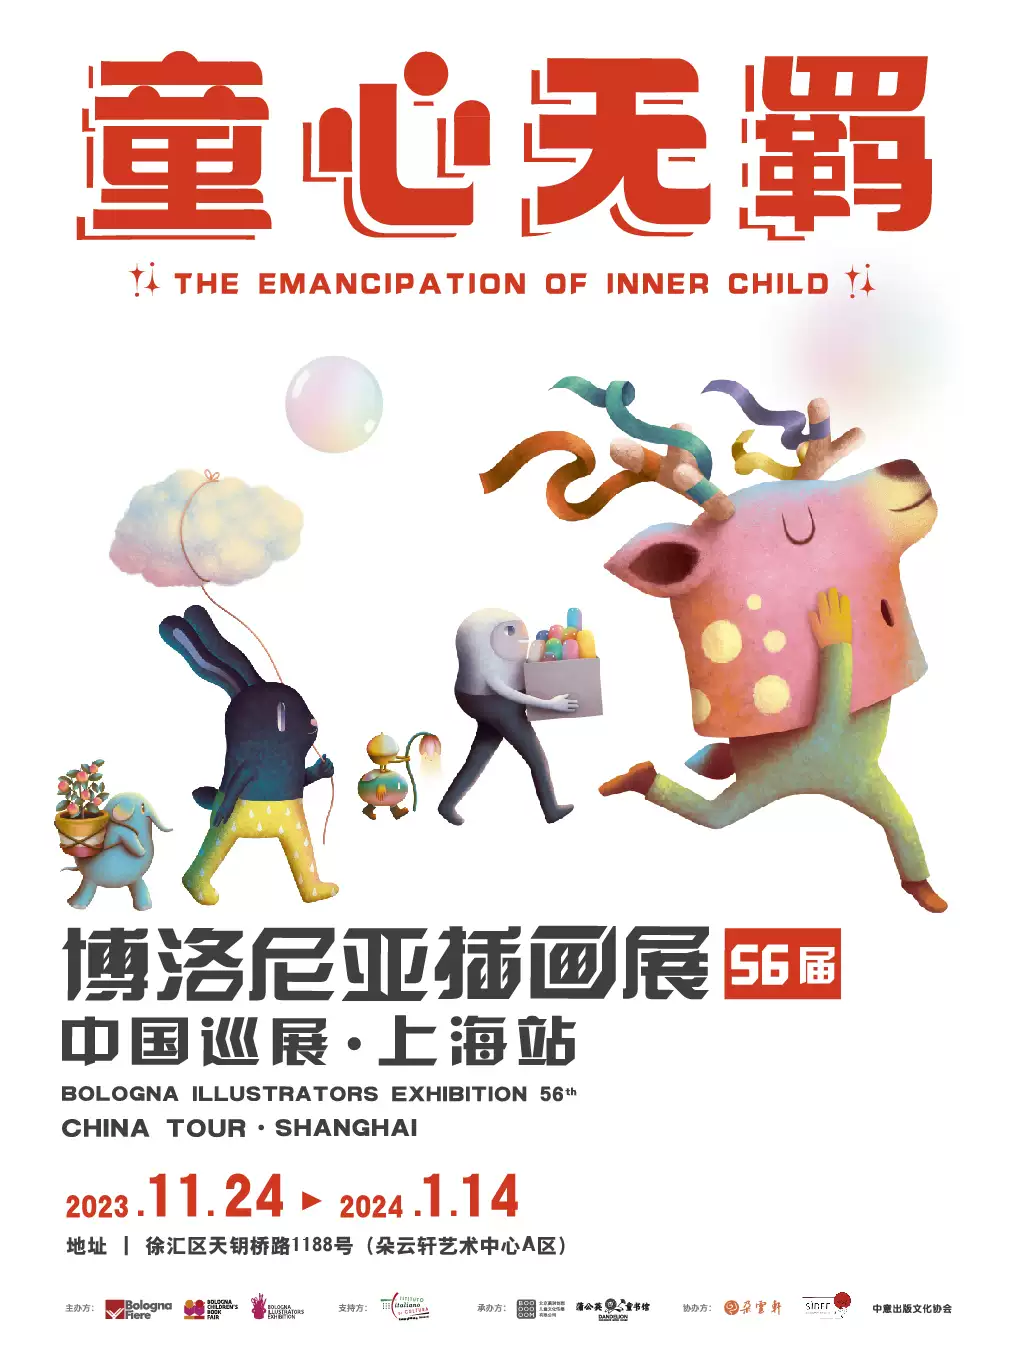 【上海】 56届博洛尼亚插画展中国巡展